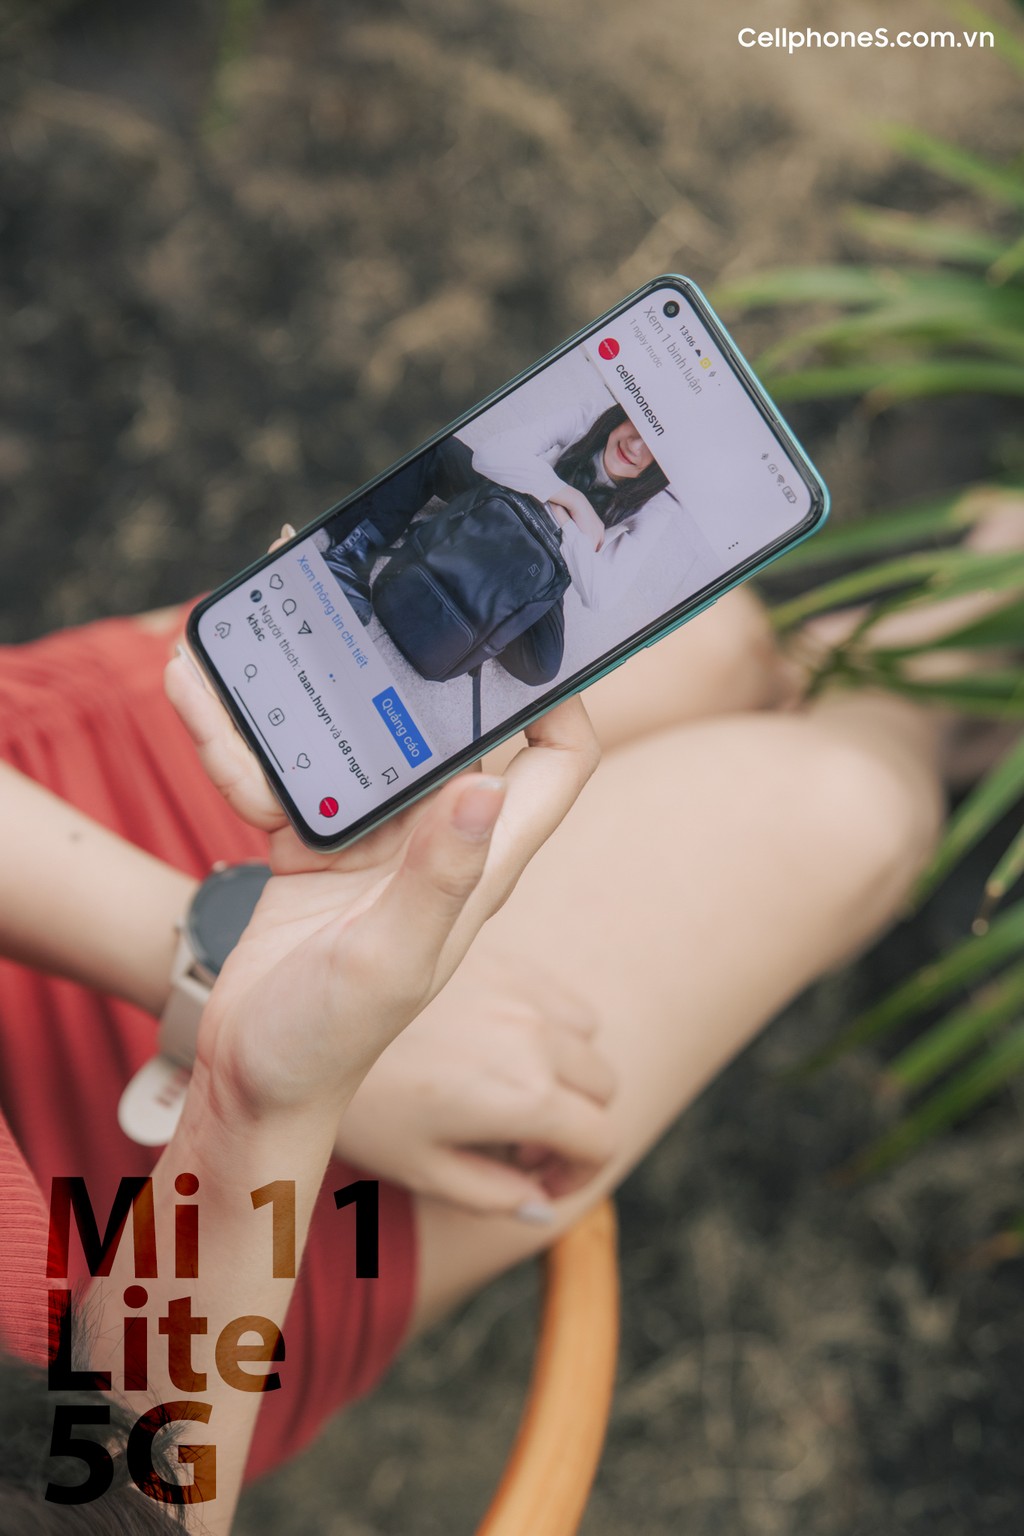 Mi 11 Lite 5G mở đặt trước, quà hơn 4 triệu, độc quyền CellphoneS ảnh 6